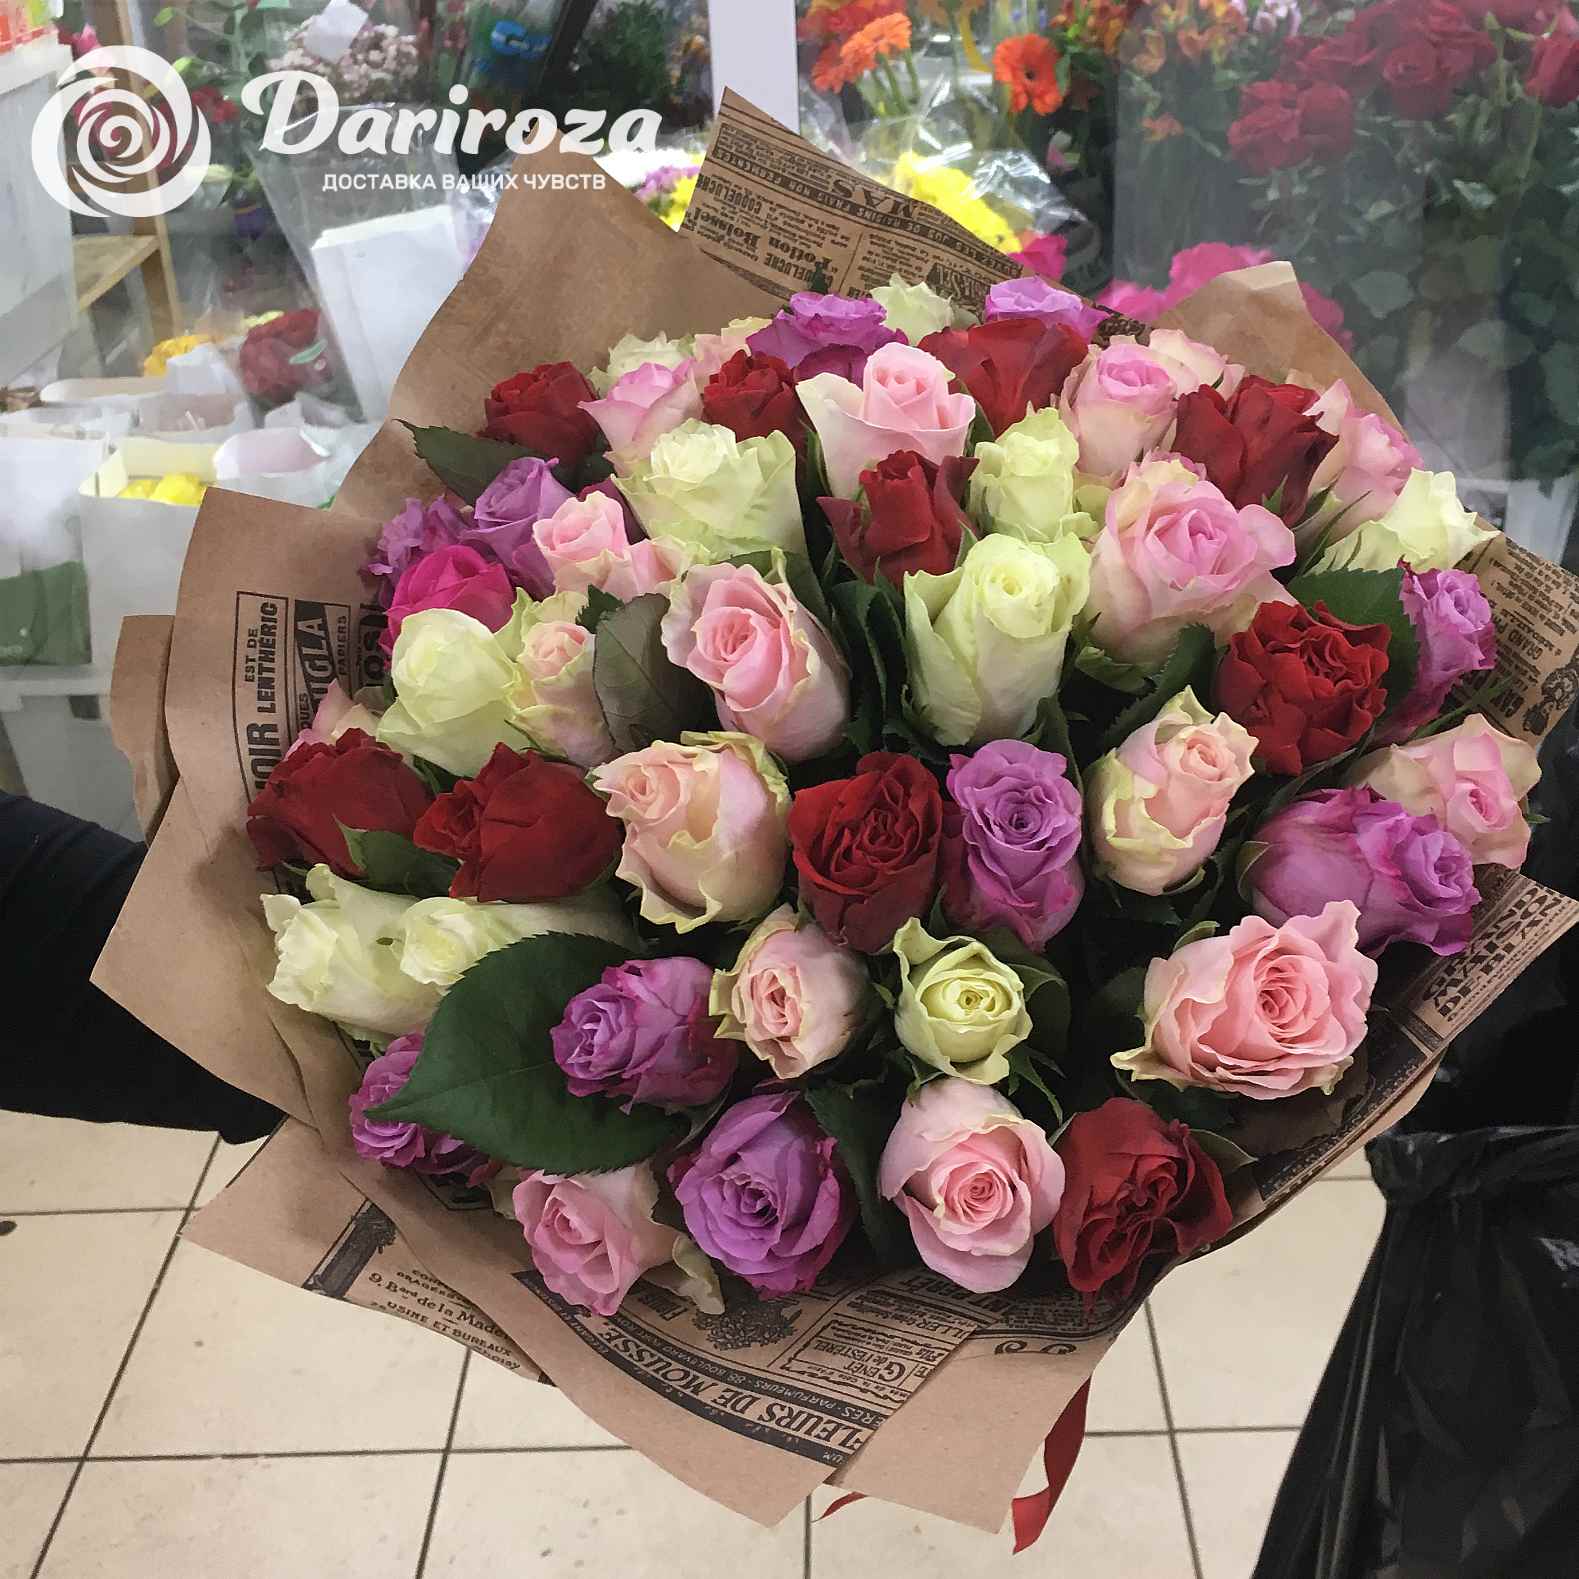 Заказать цветы с доставкой в челябинске недорого доставка цветов туапсе недорого